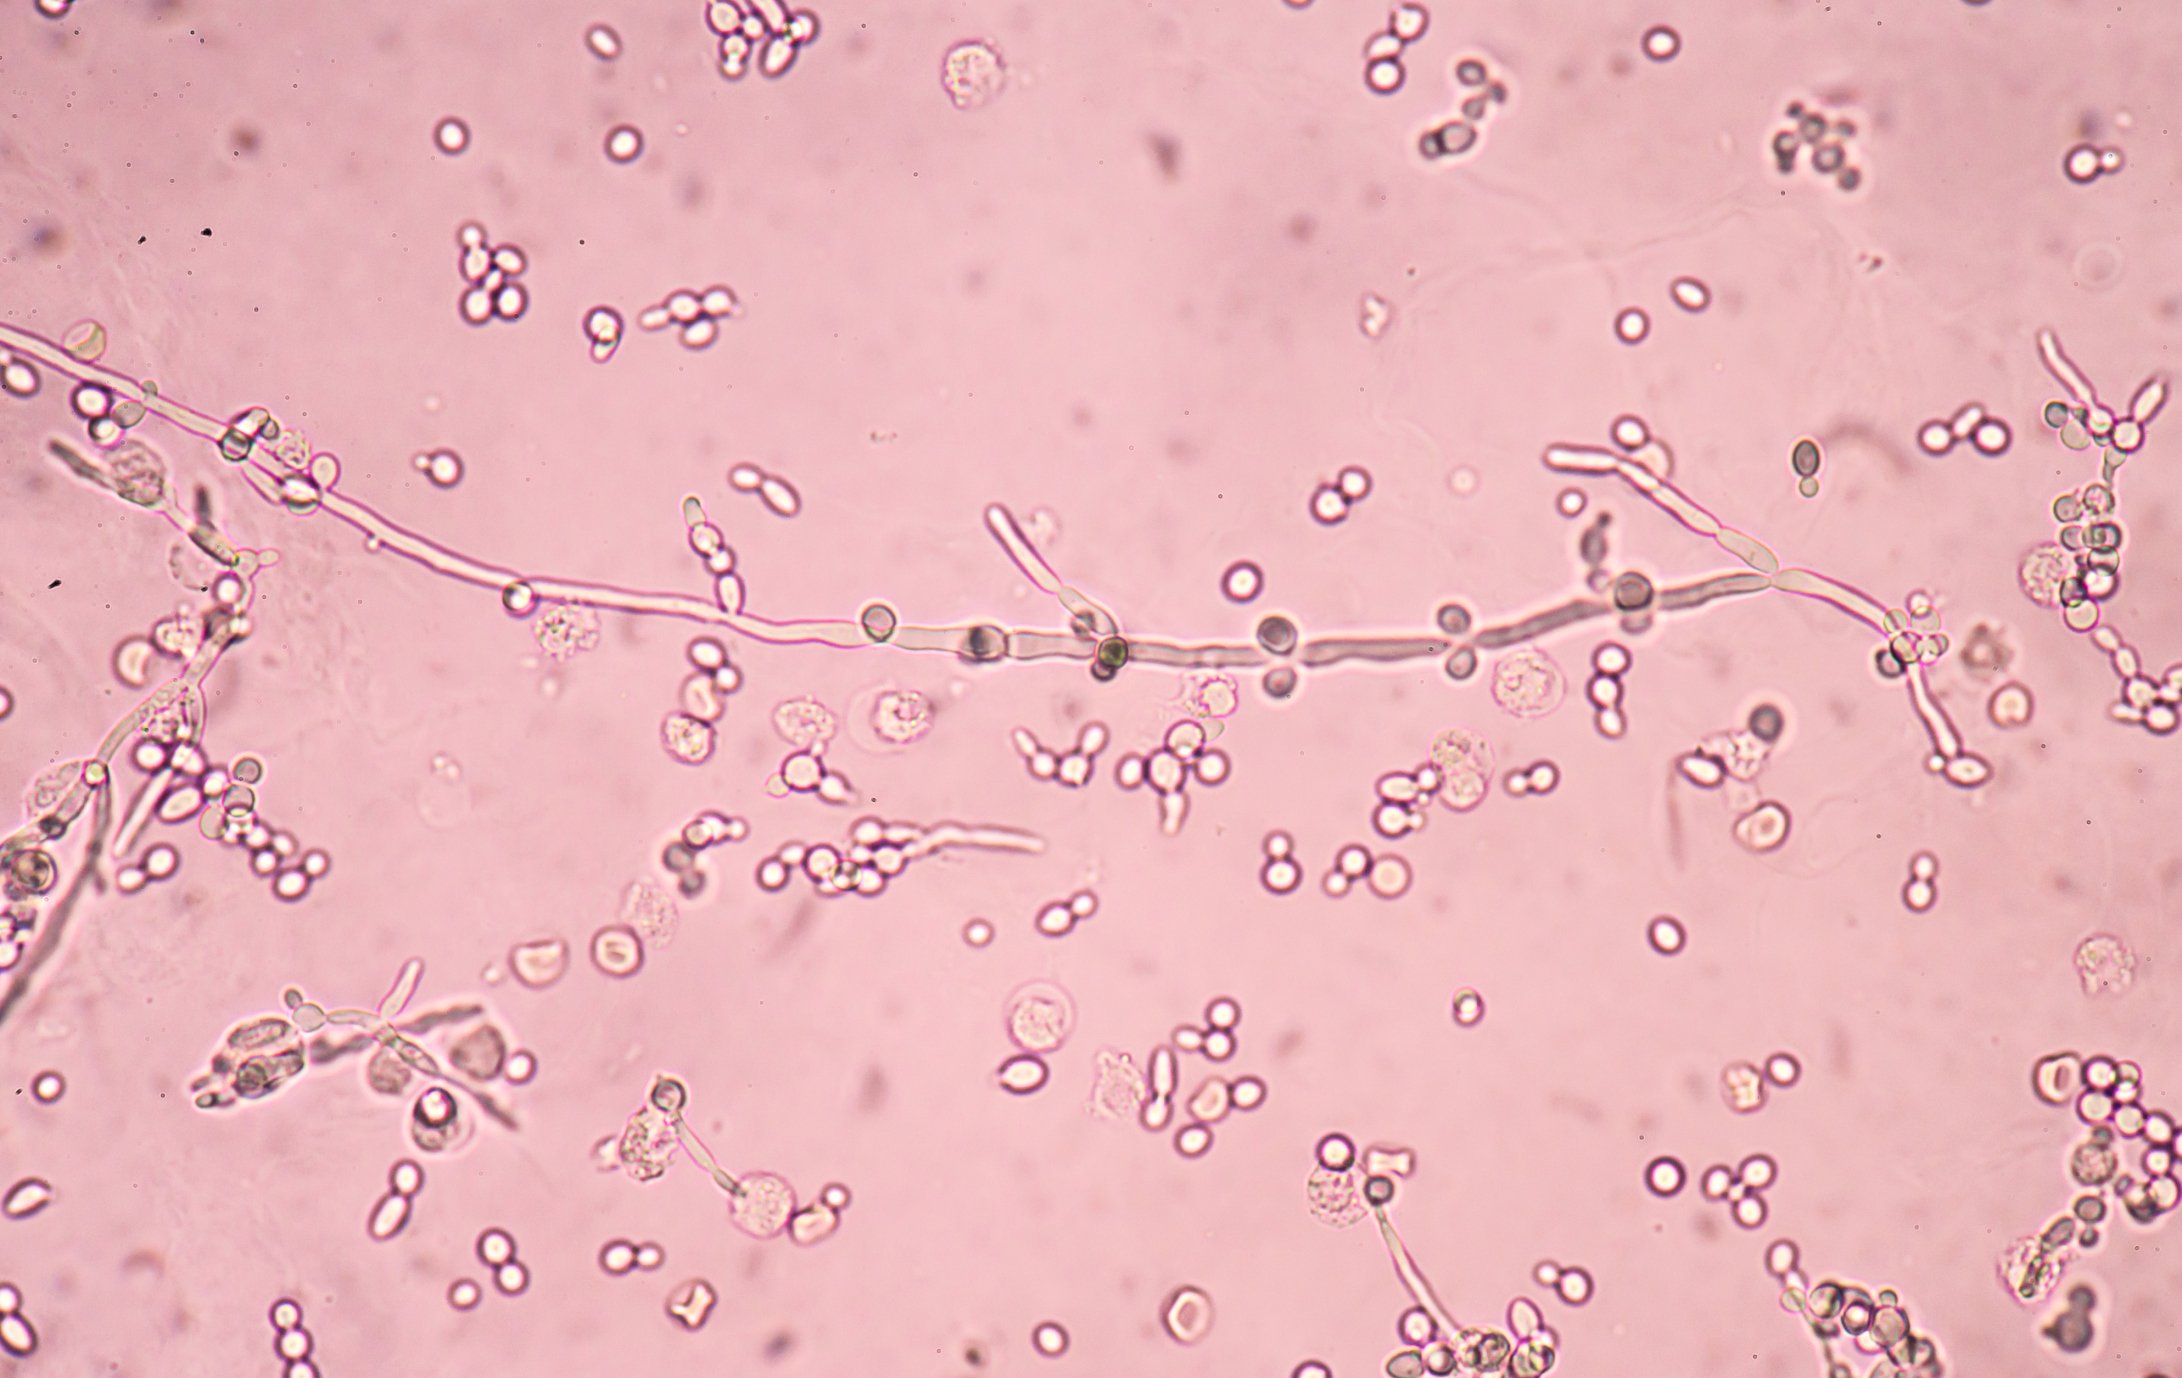 Молочница бактерии. Candida дрожжевые клетки псевдомицелий. Грибы кандида микроскопия. Candida albicans почкующиеся клетки. Кандида бактерия под микроскопом.